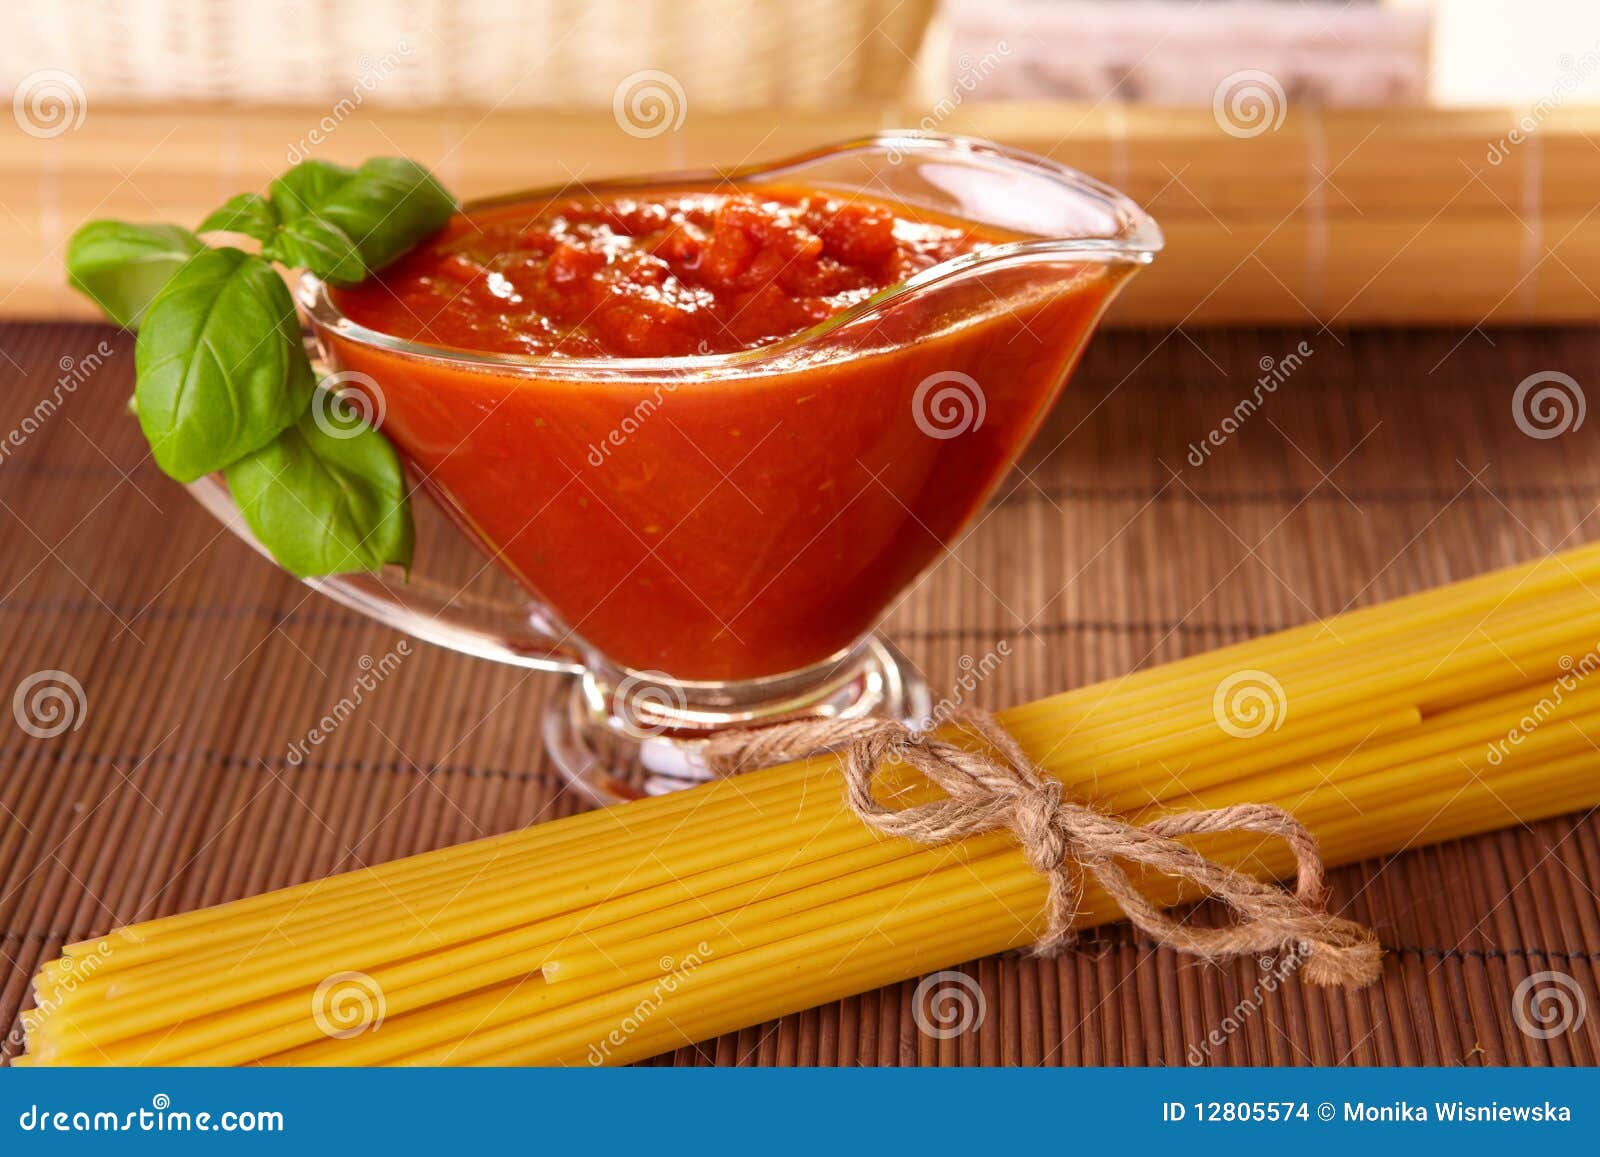 томатный соус с базиликом к пасте или пицце фото 15